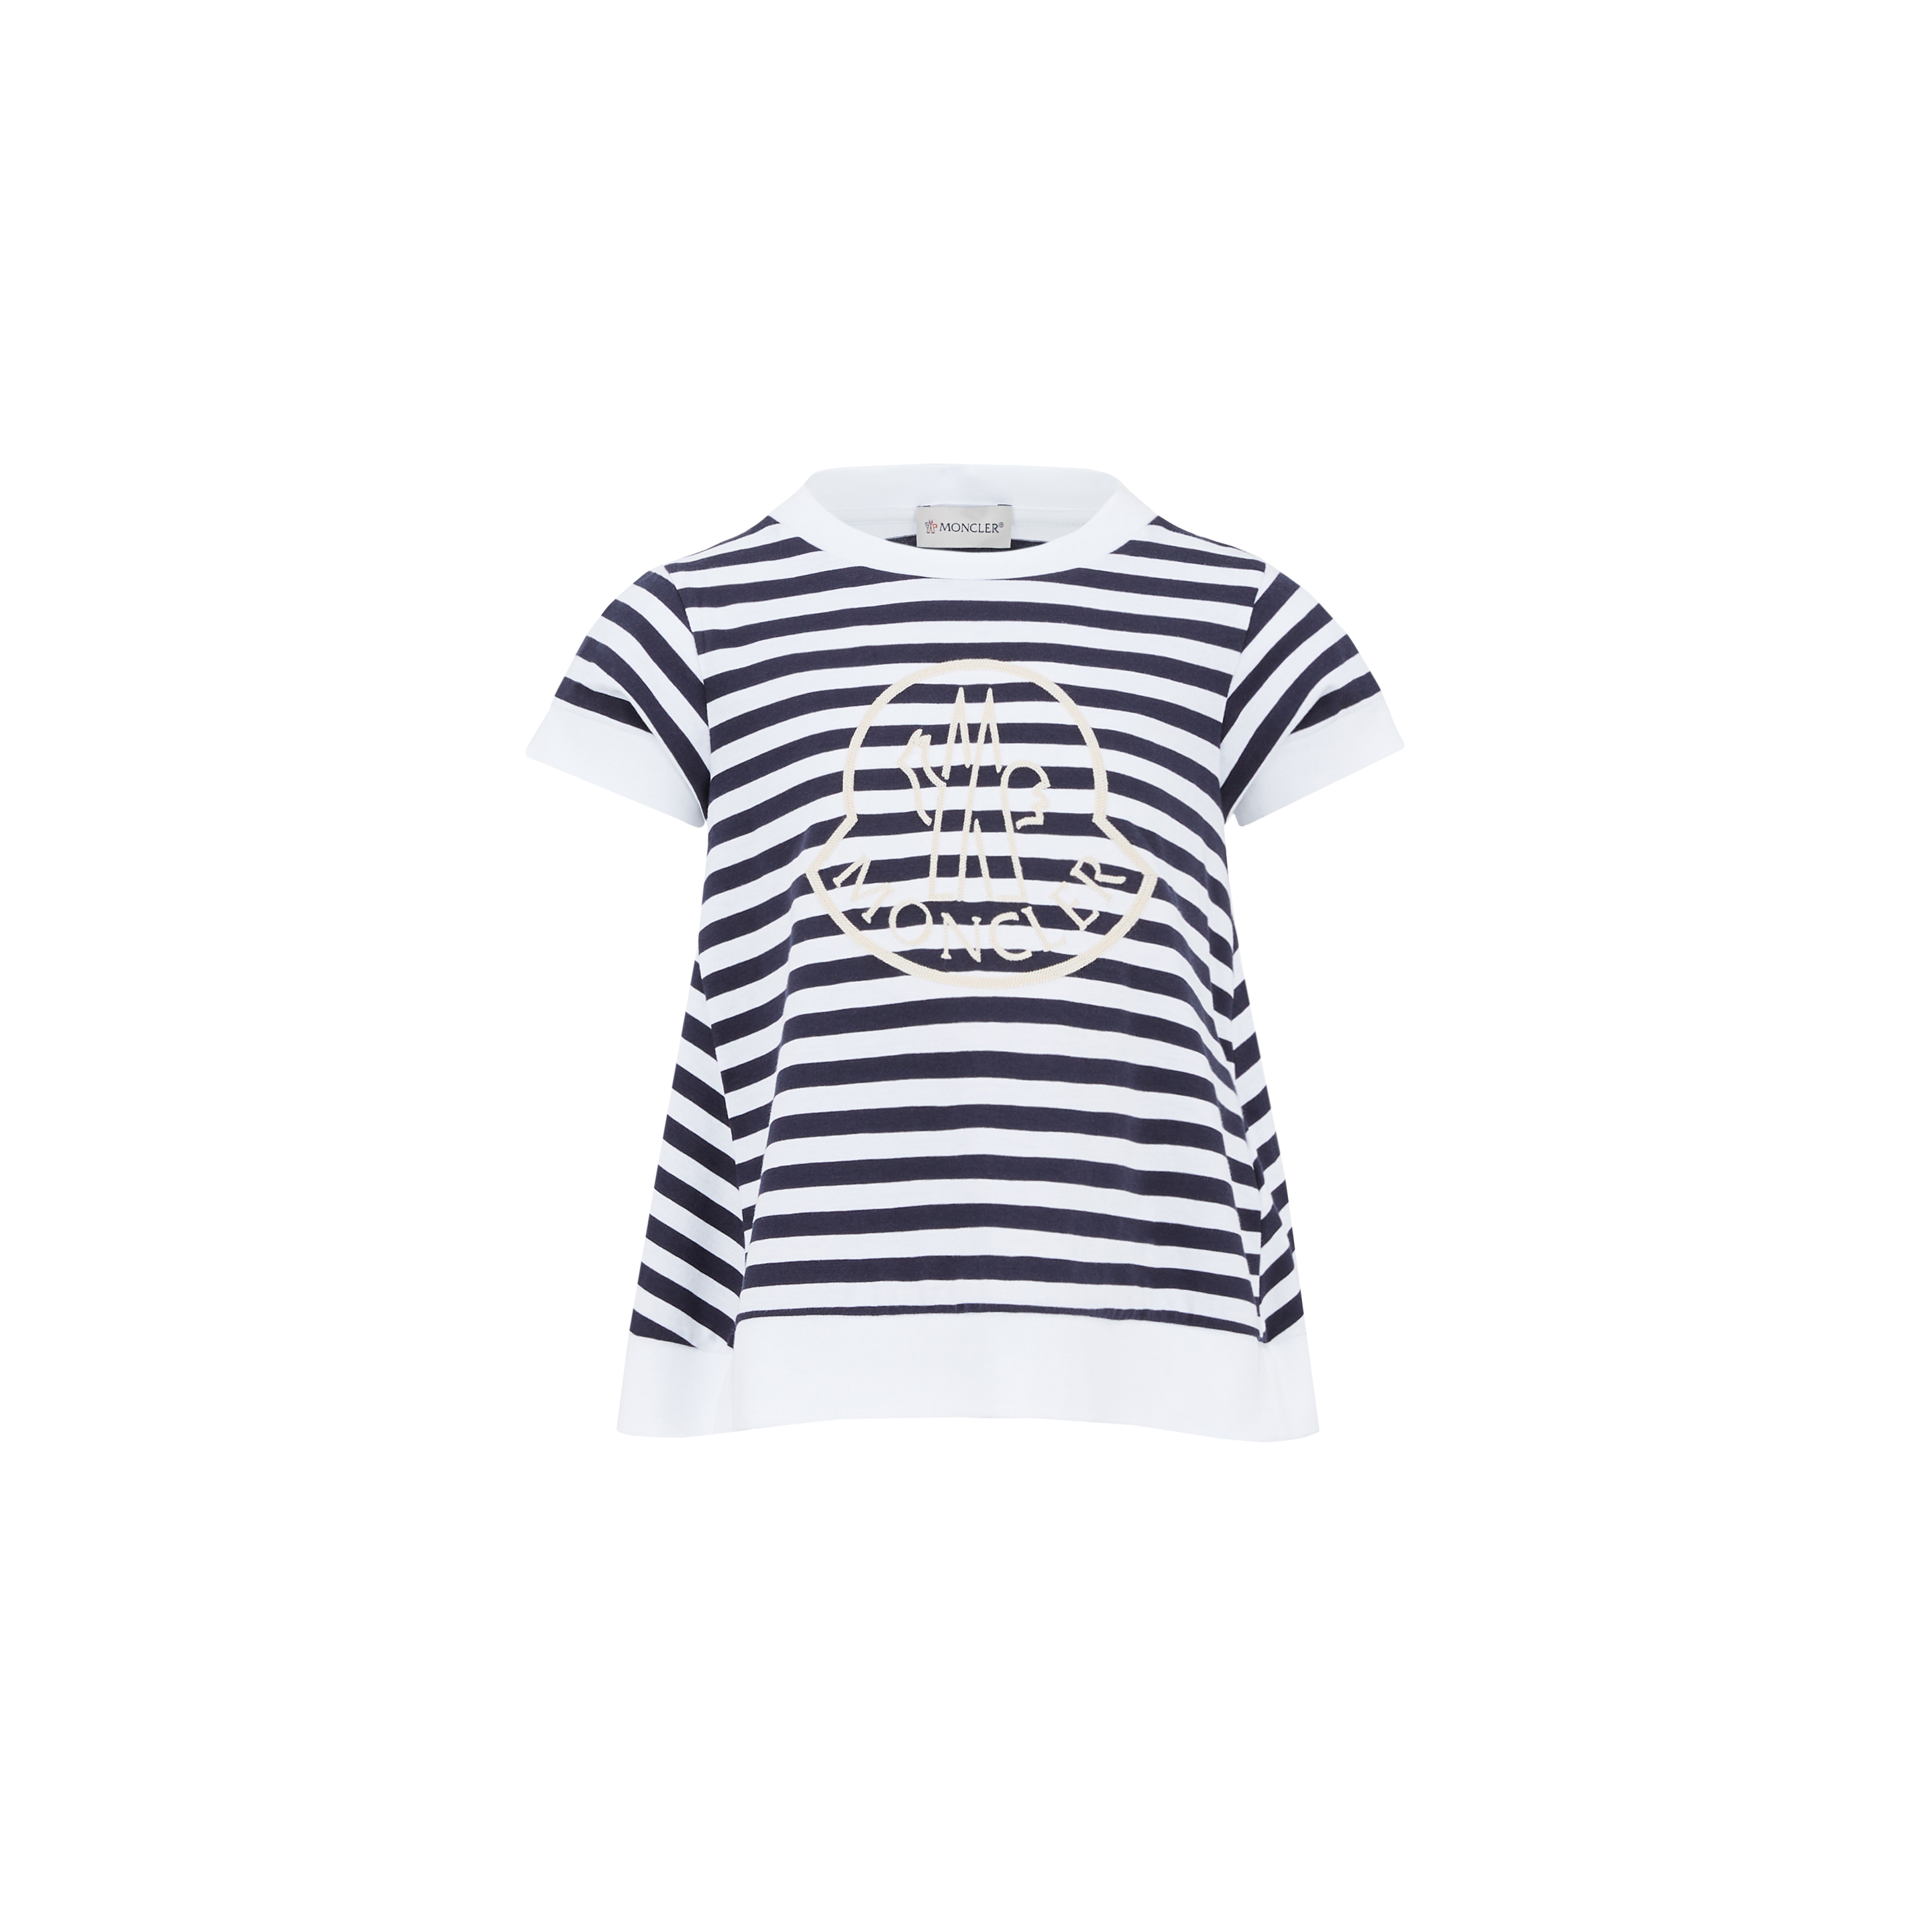 Moncler Kids' Striped Logo T-shirt, Multicolour, Size: 10y